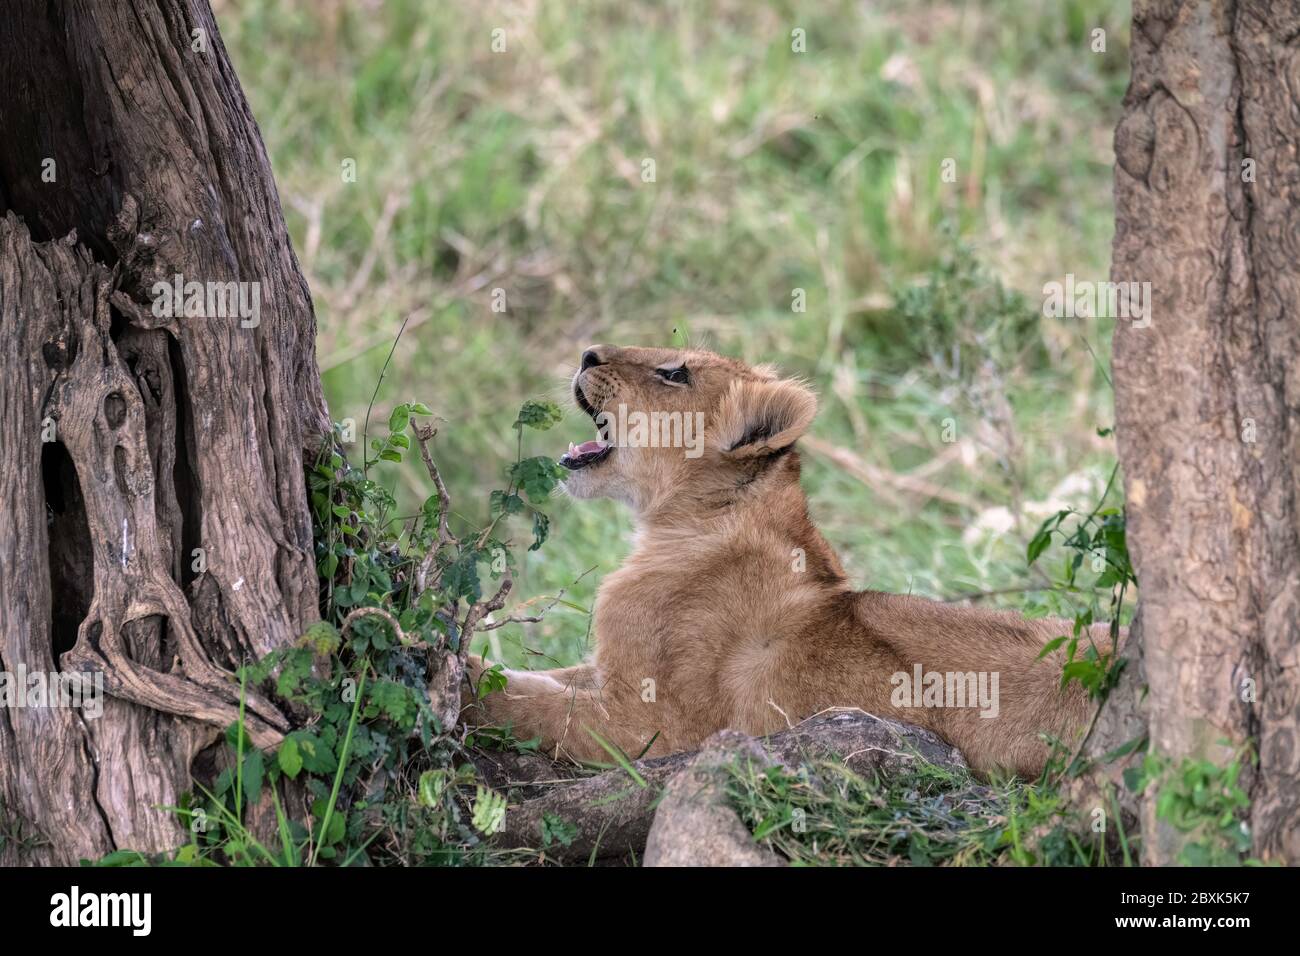 Bezauberndes junges Löwenjunge, das zwischen zwei Bäumen sitzt und aufschaut, während eine Fliege mit offenem Mund um den Kopf herum brummt. Stockfoto